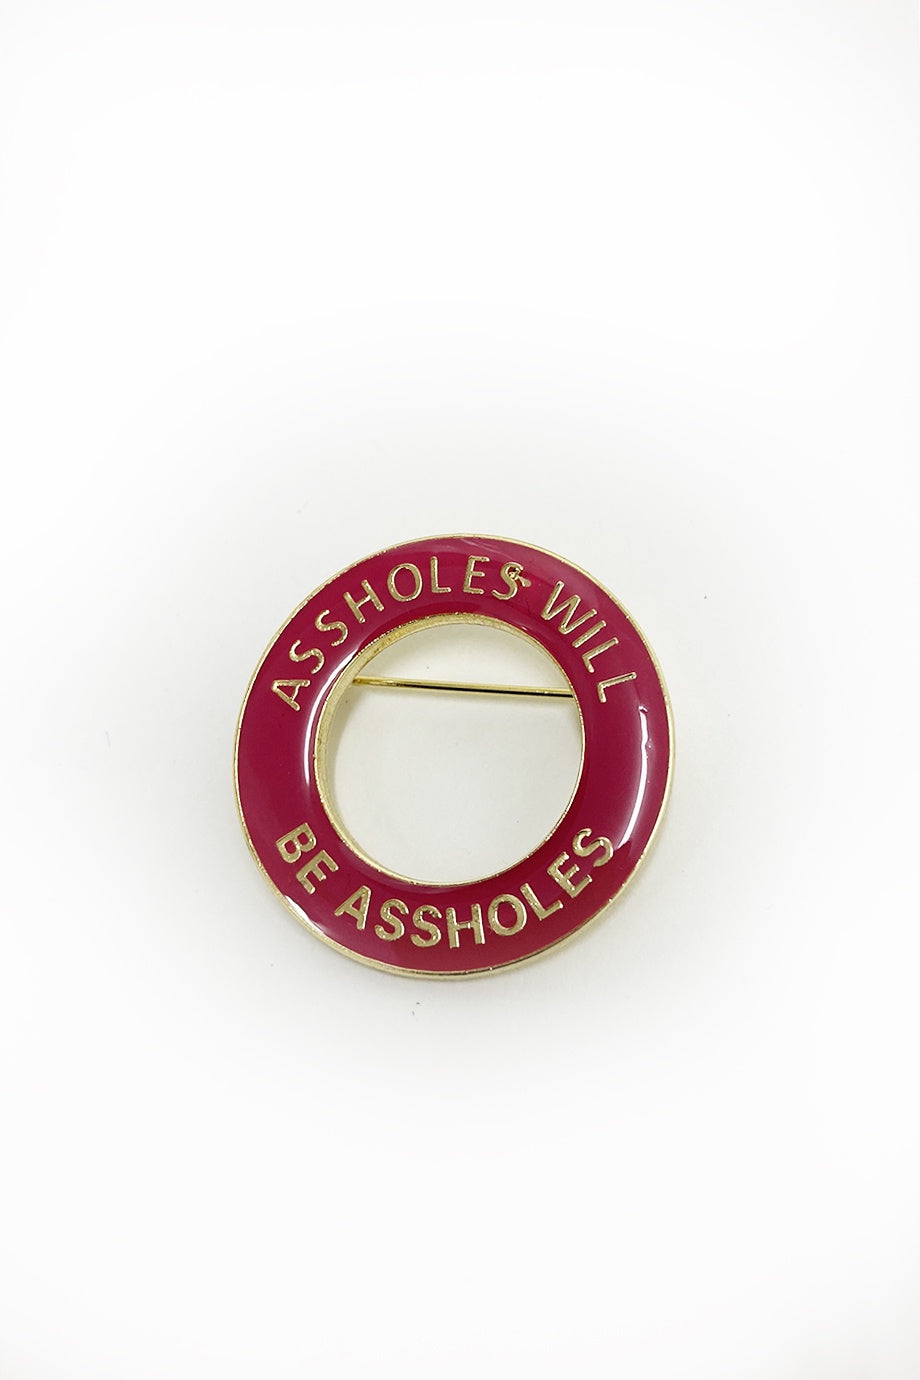 WORLD Enamel Badge - ASSHOLE